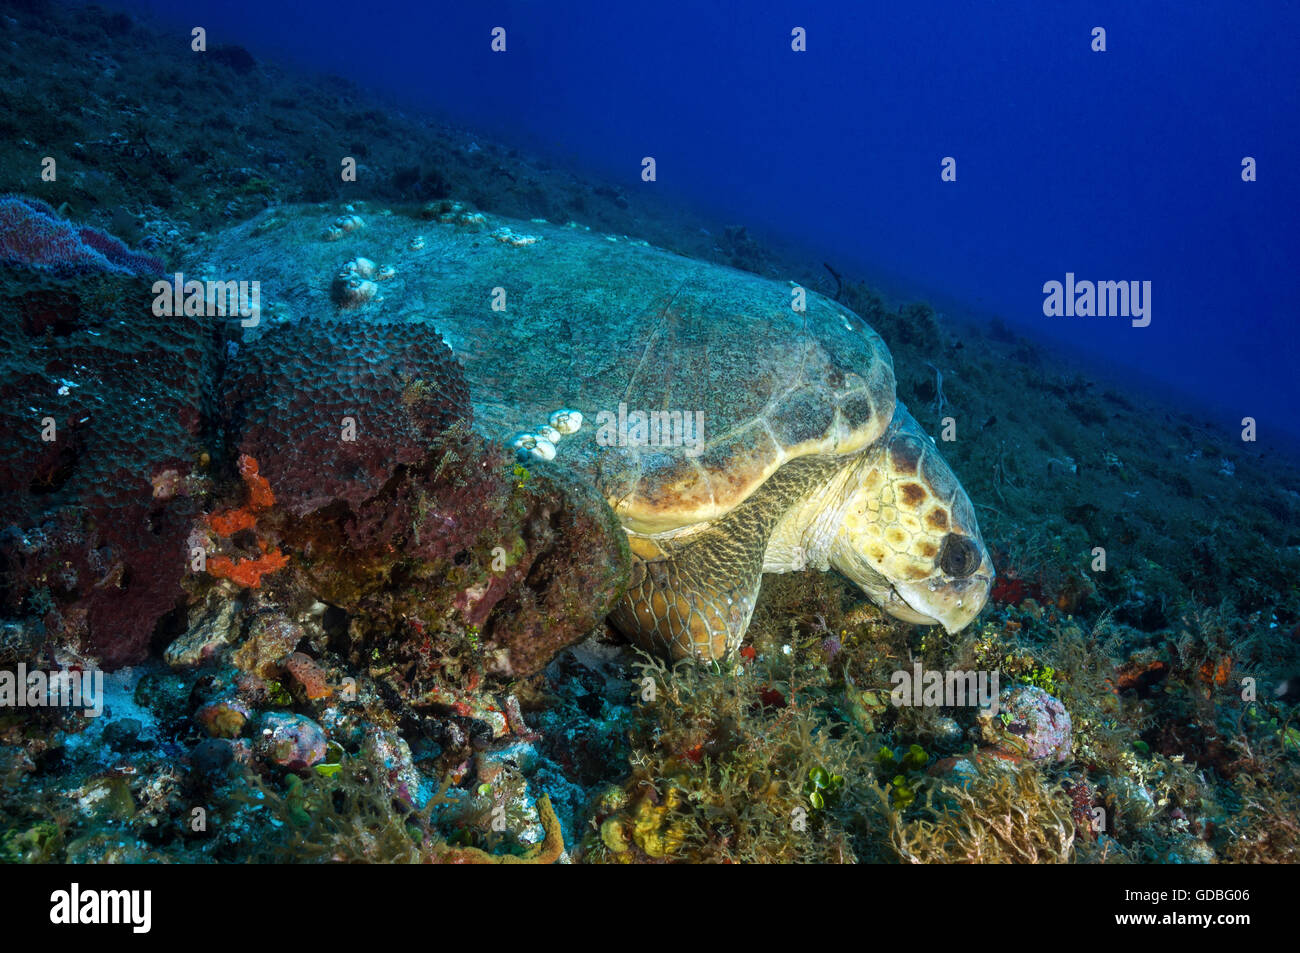 Tortue caouanne dormir sur un récif Cozumel profonde. Banque D'Images